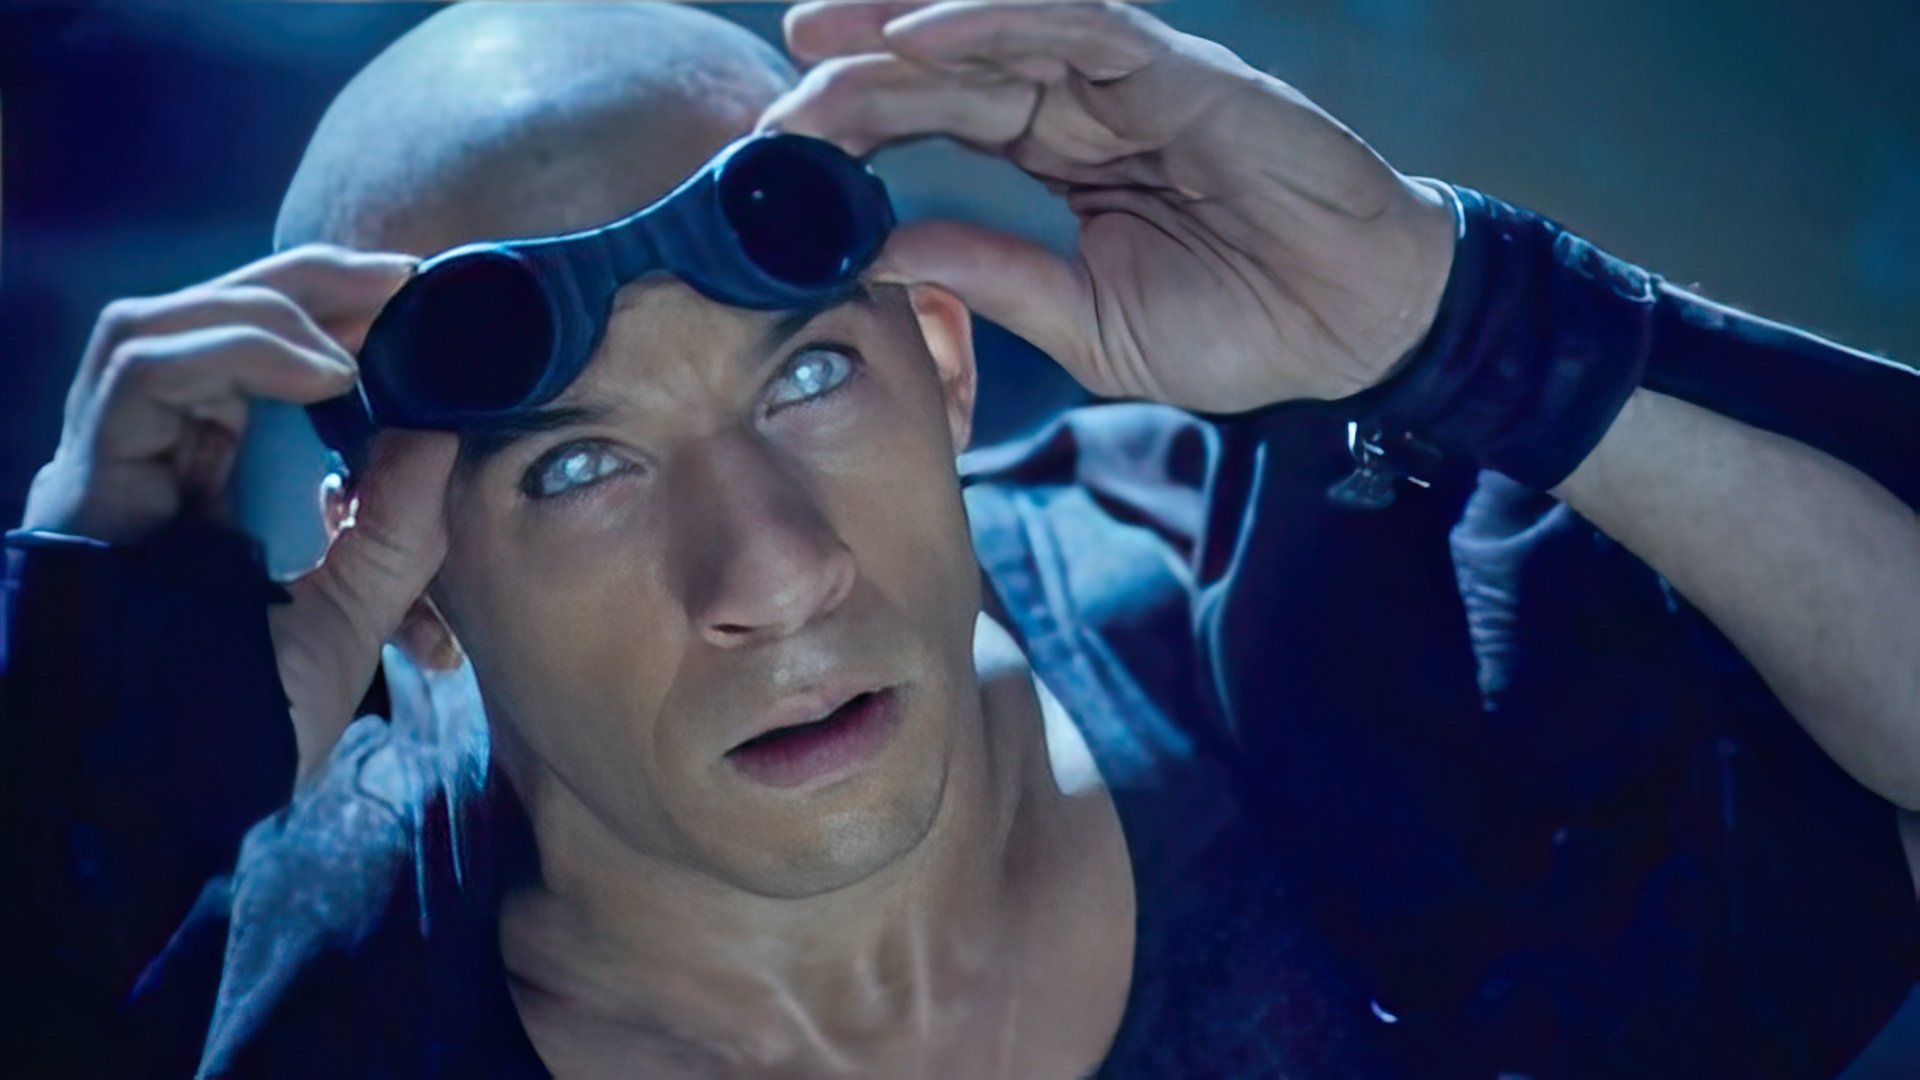 Riddick's famous eyes – Vin Diesel wore phosphorescent lenses